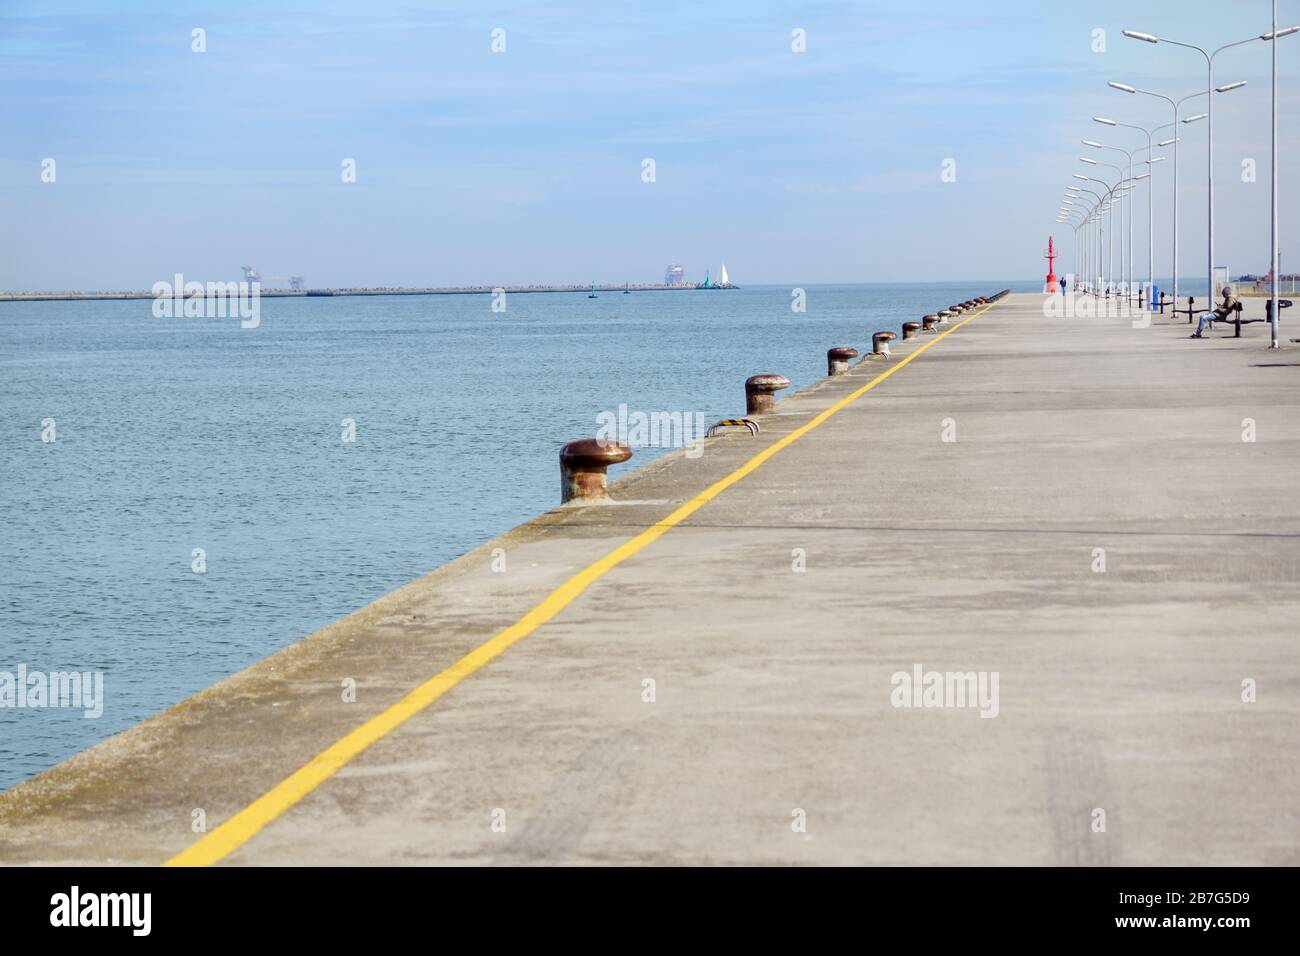 empty concrete floor of pier at port . Stock Photo